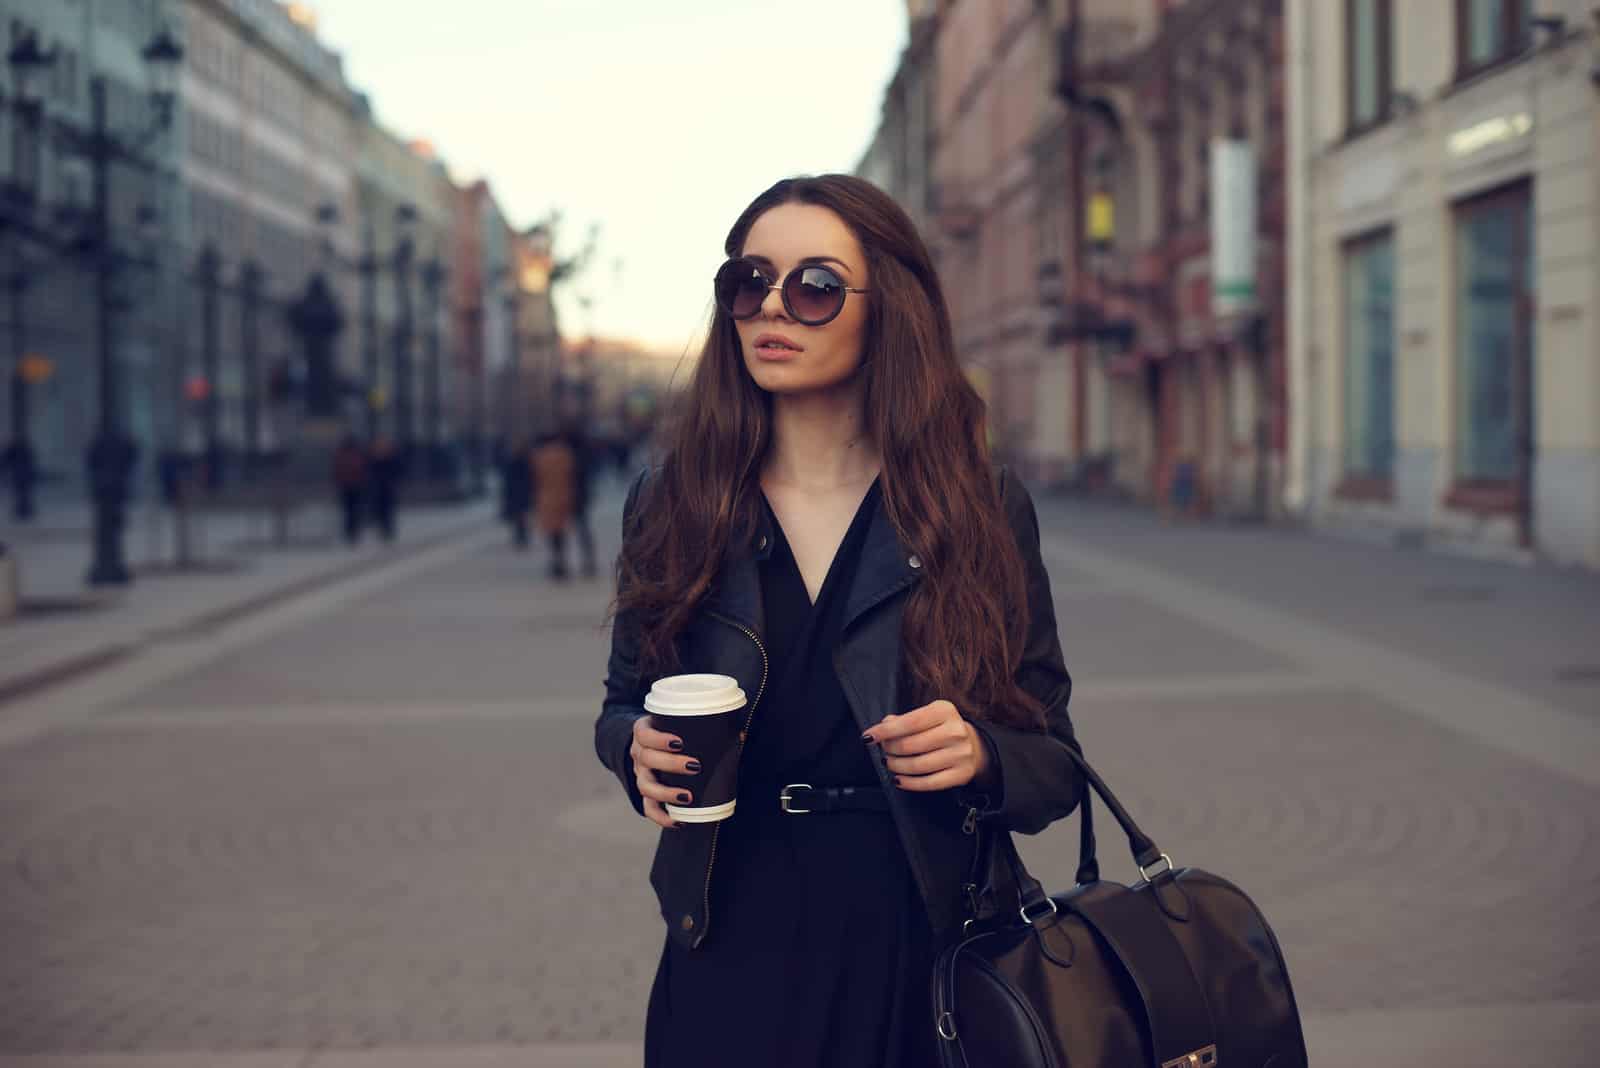 Une femme aux longs cheveux bruns avec des lunettes sur la tête se dresse dans la rue tenant un café à la main